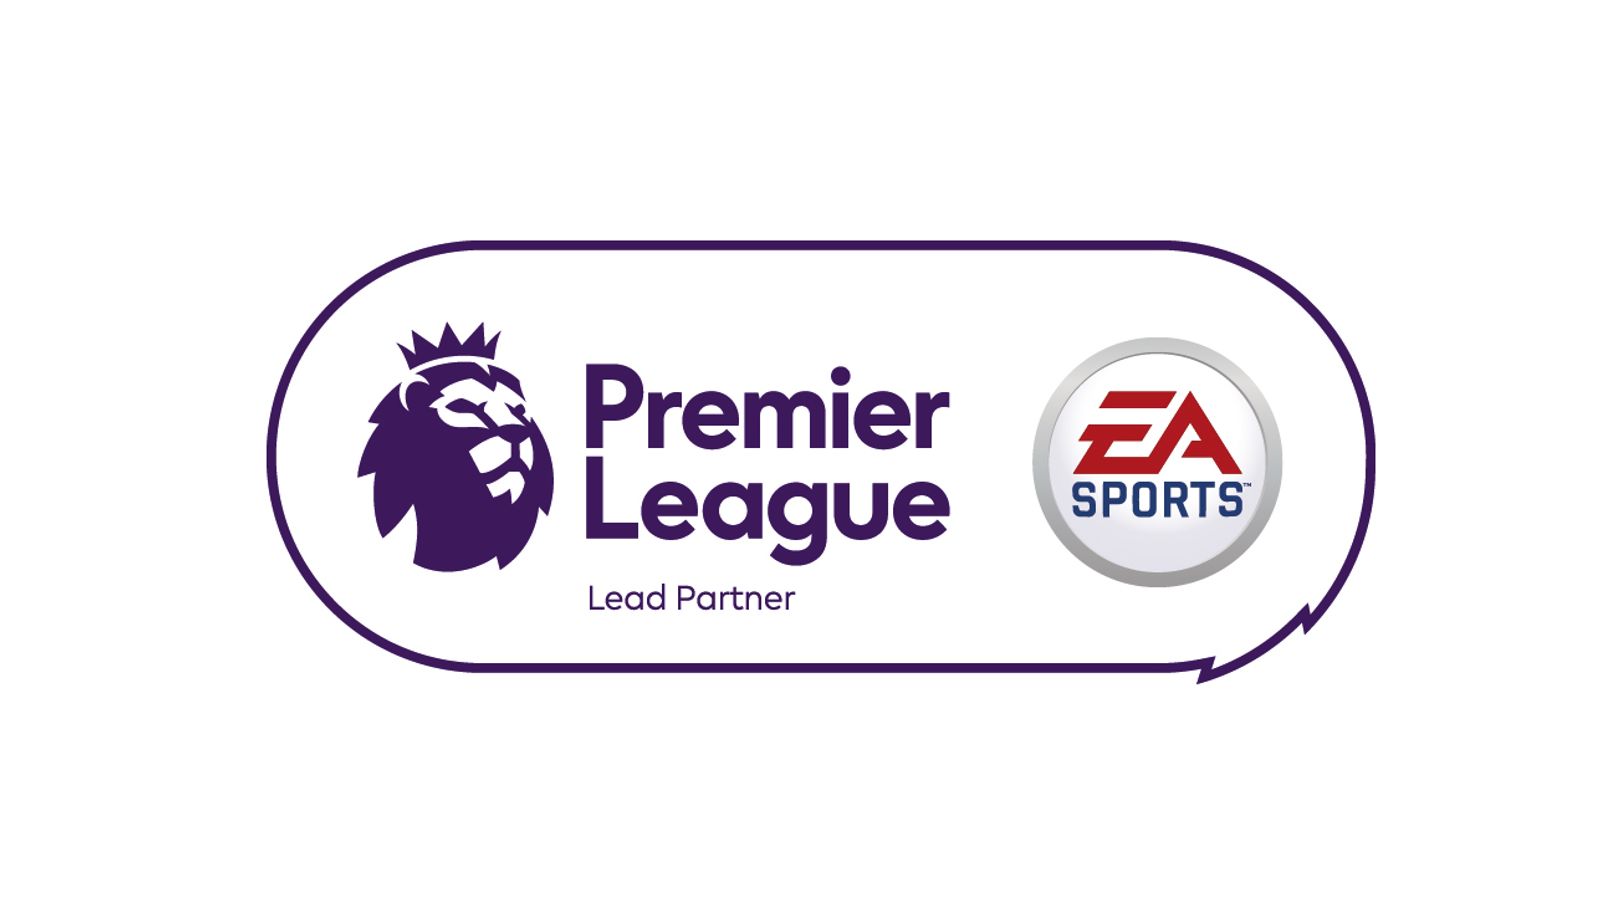 Premier League and EA Sports. Premier. Испанская премьер лига EA Sports. Lead your partner.